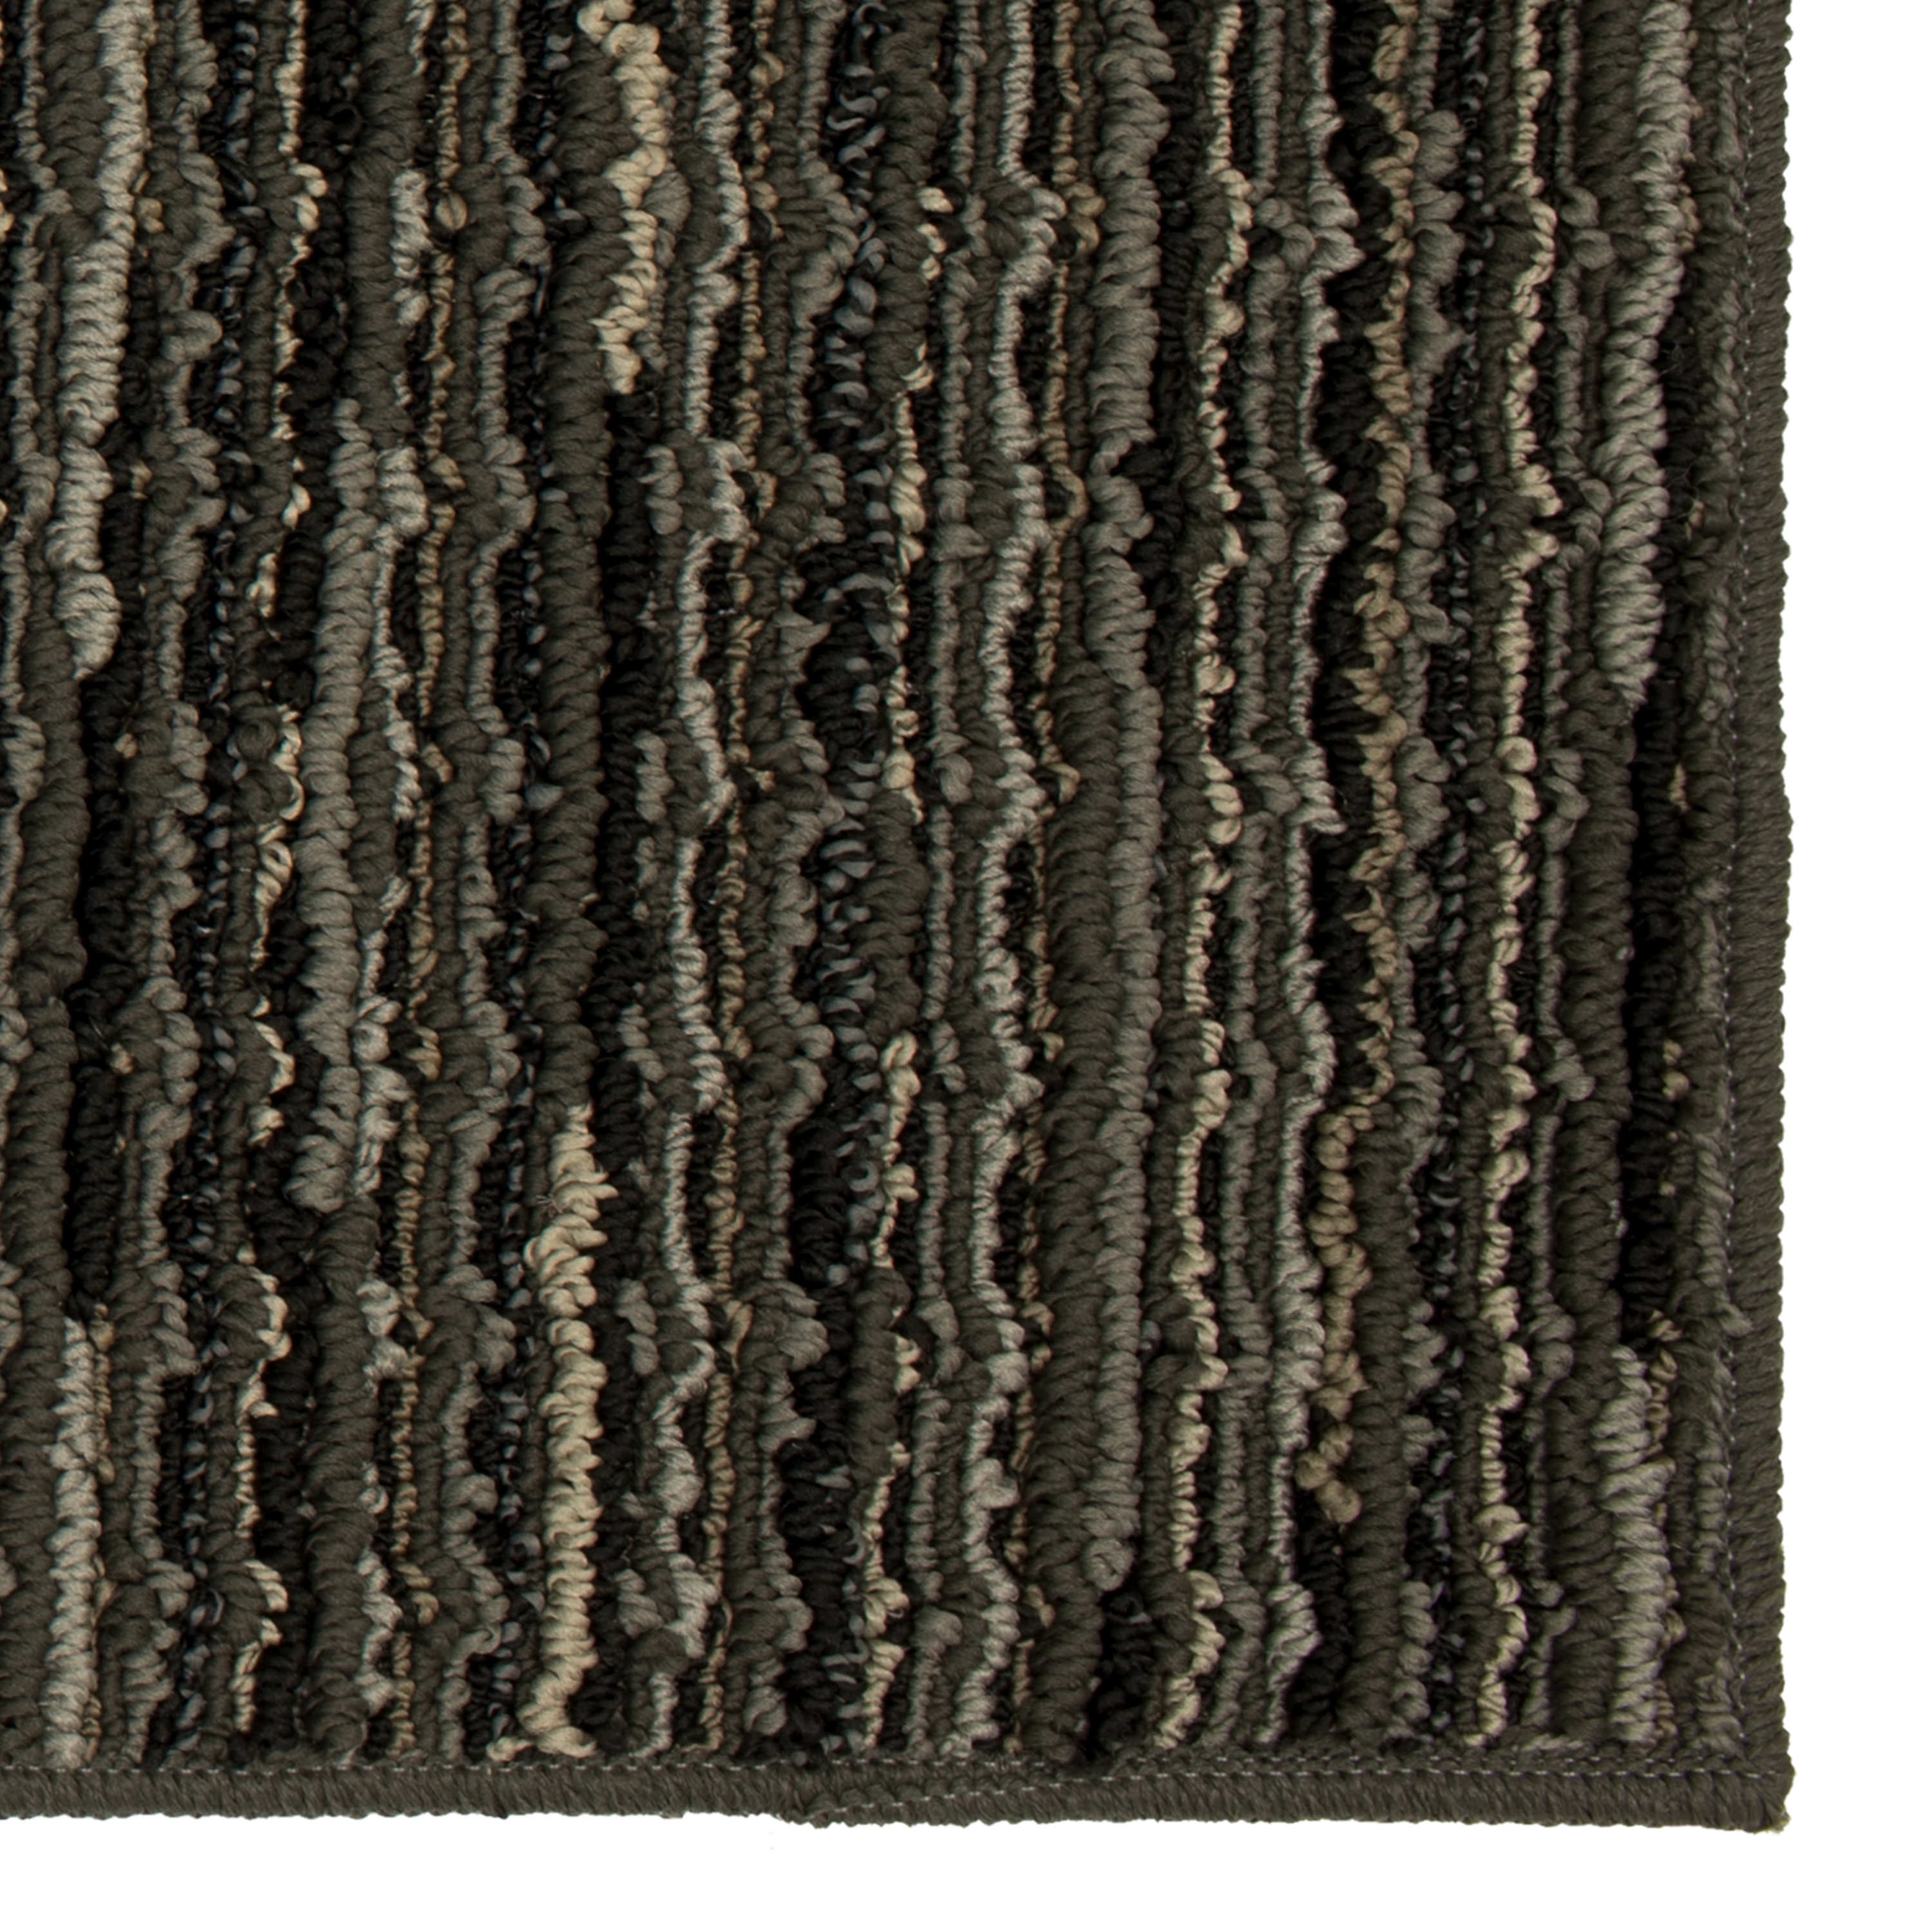 34 x 20 Vintage Striped Kitchen Rug Black/Brown - Threshold™